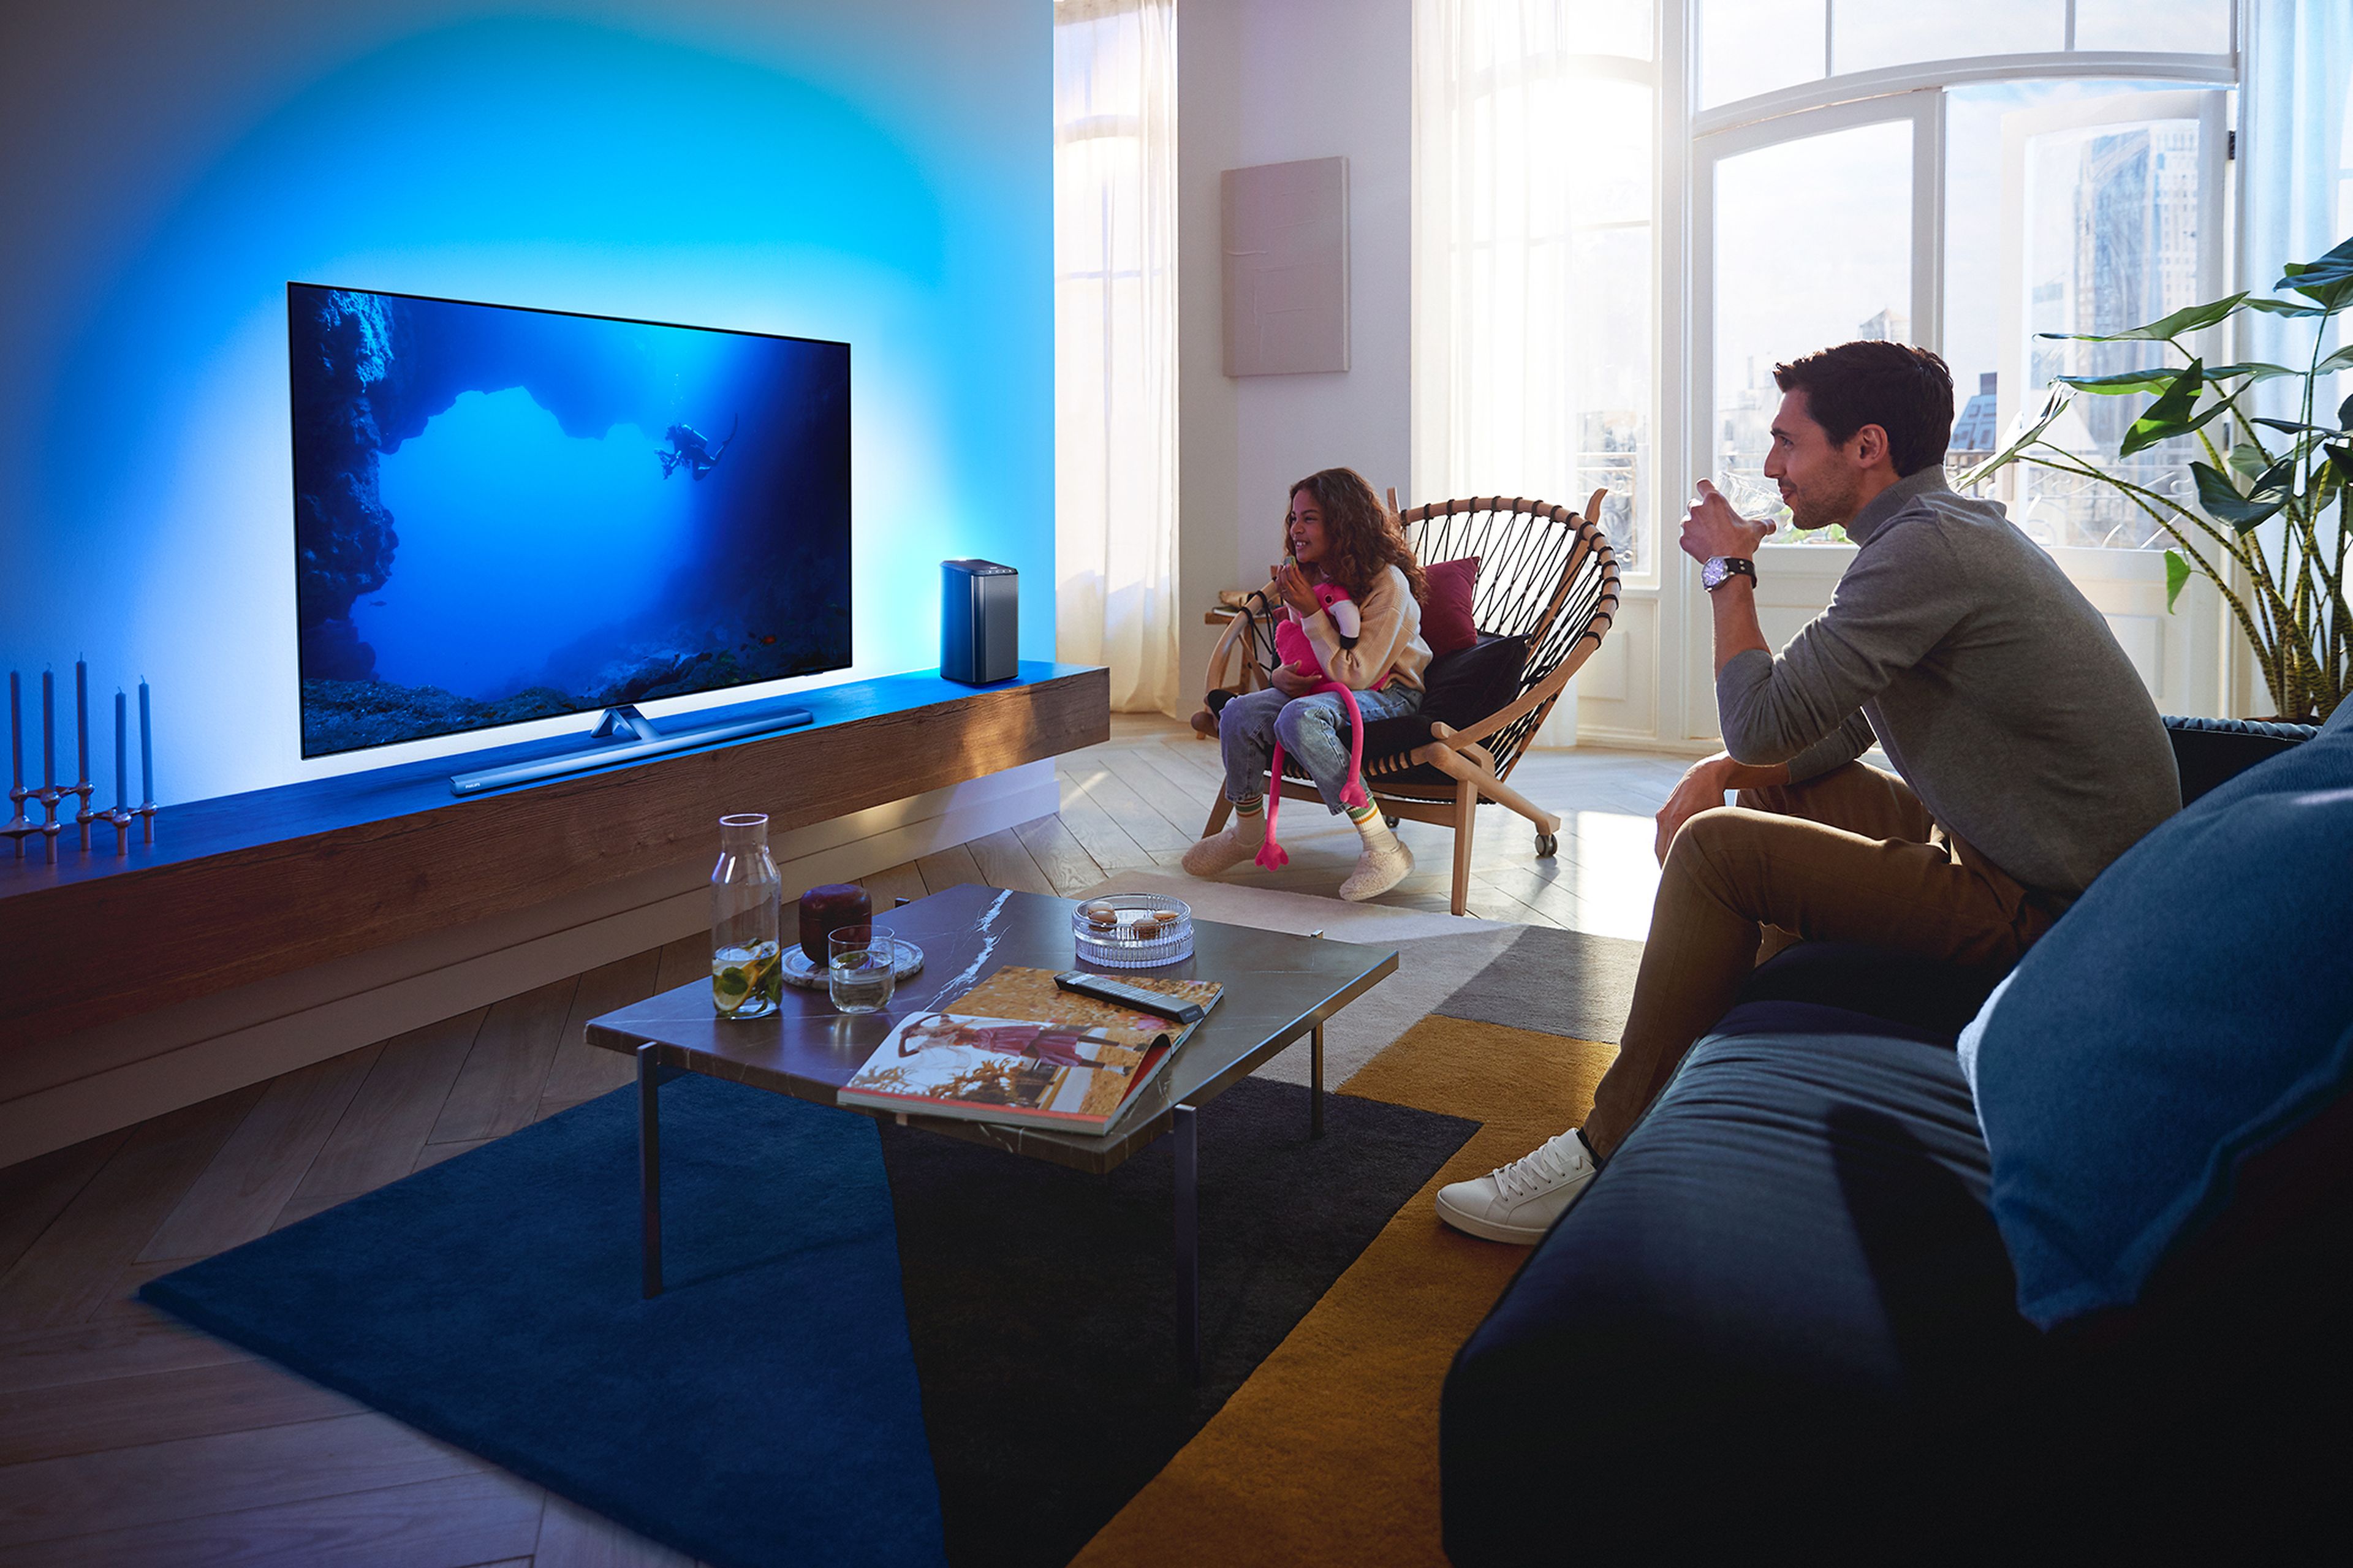 Philips Ambilight: OLED+937, OLED+907, PML9507 – nueva serie de televisores